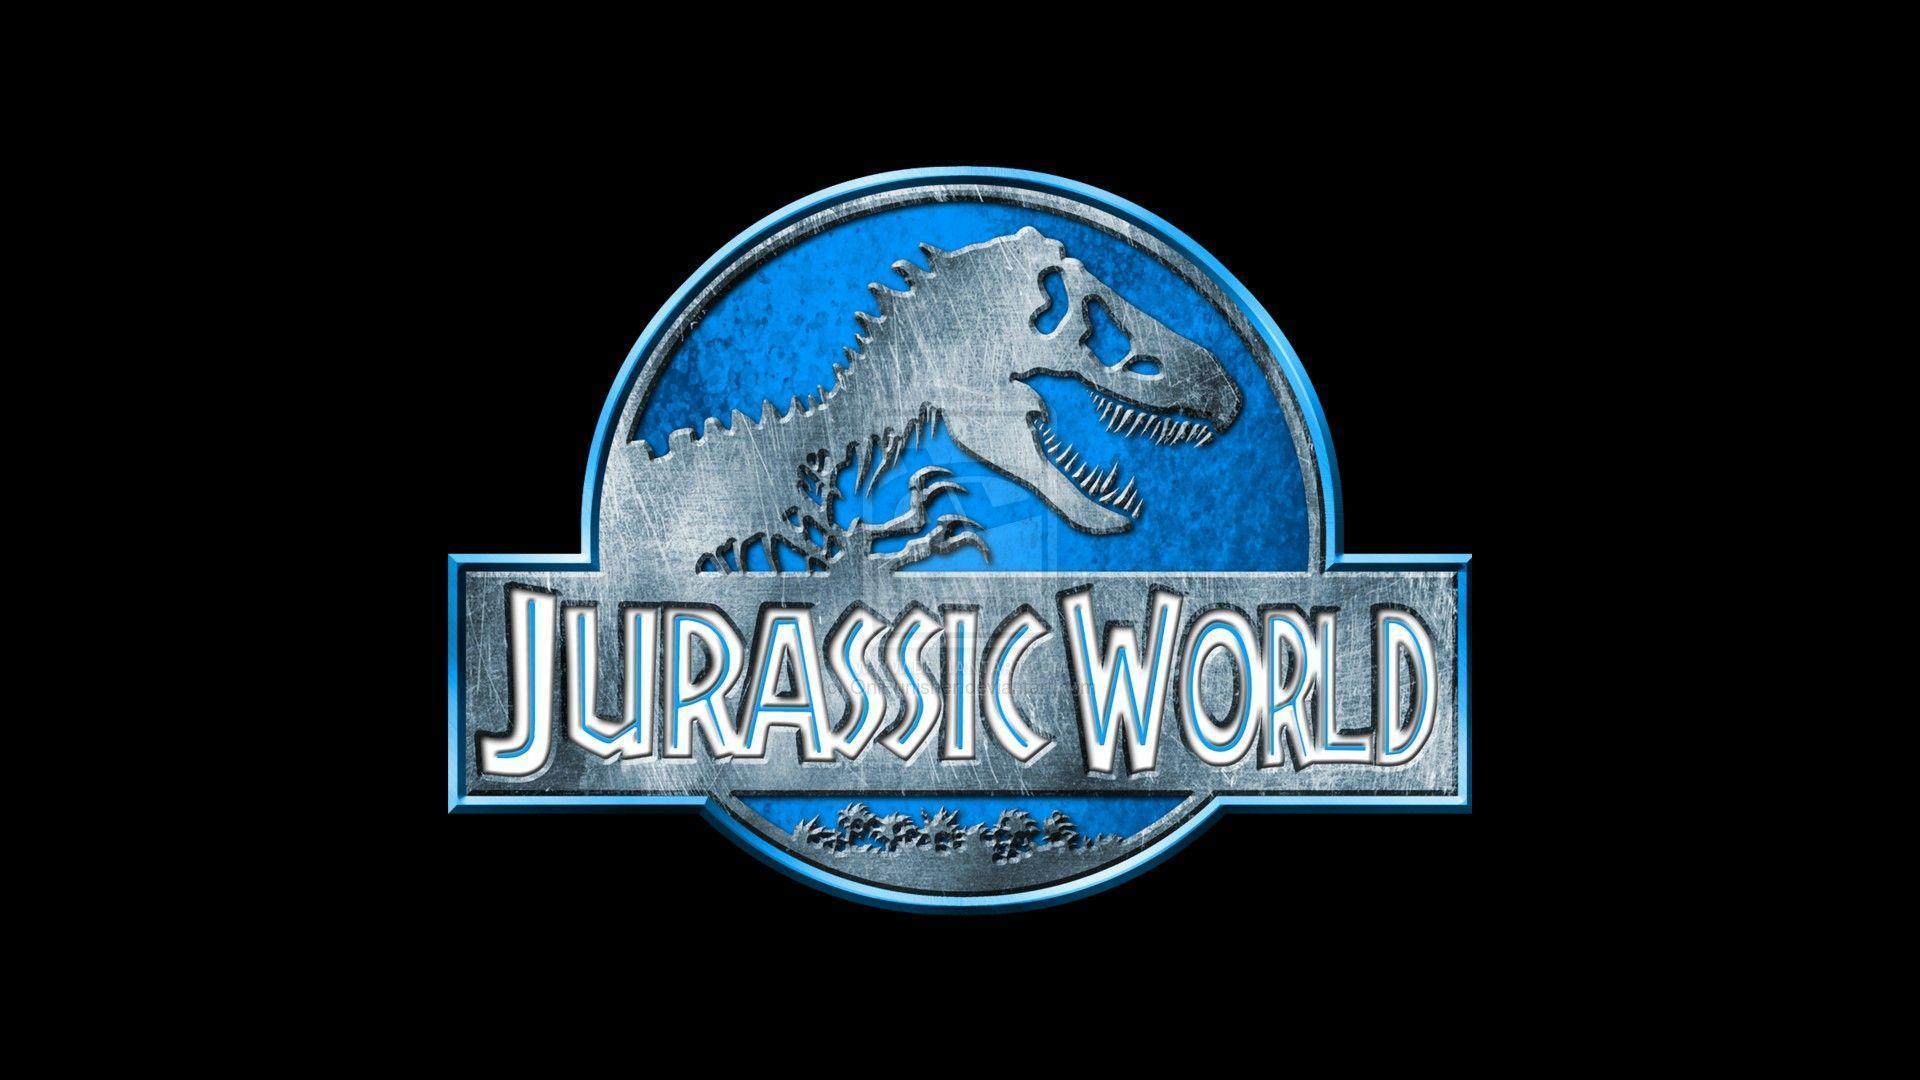 High Resolution Jurassic World Widescreen Wallpaper Full Size